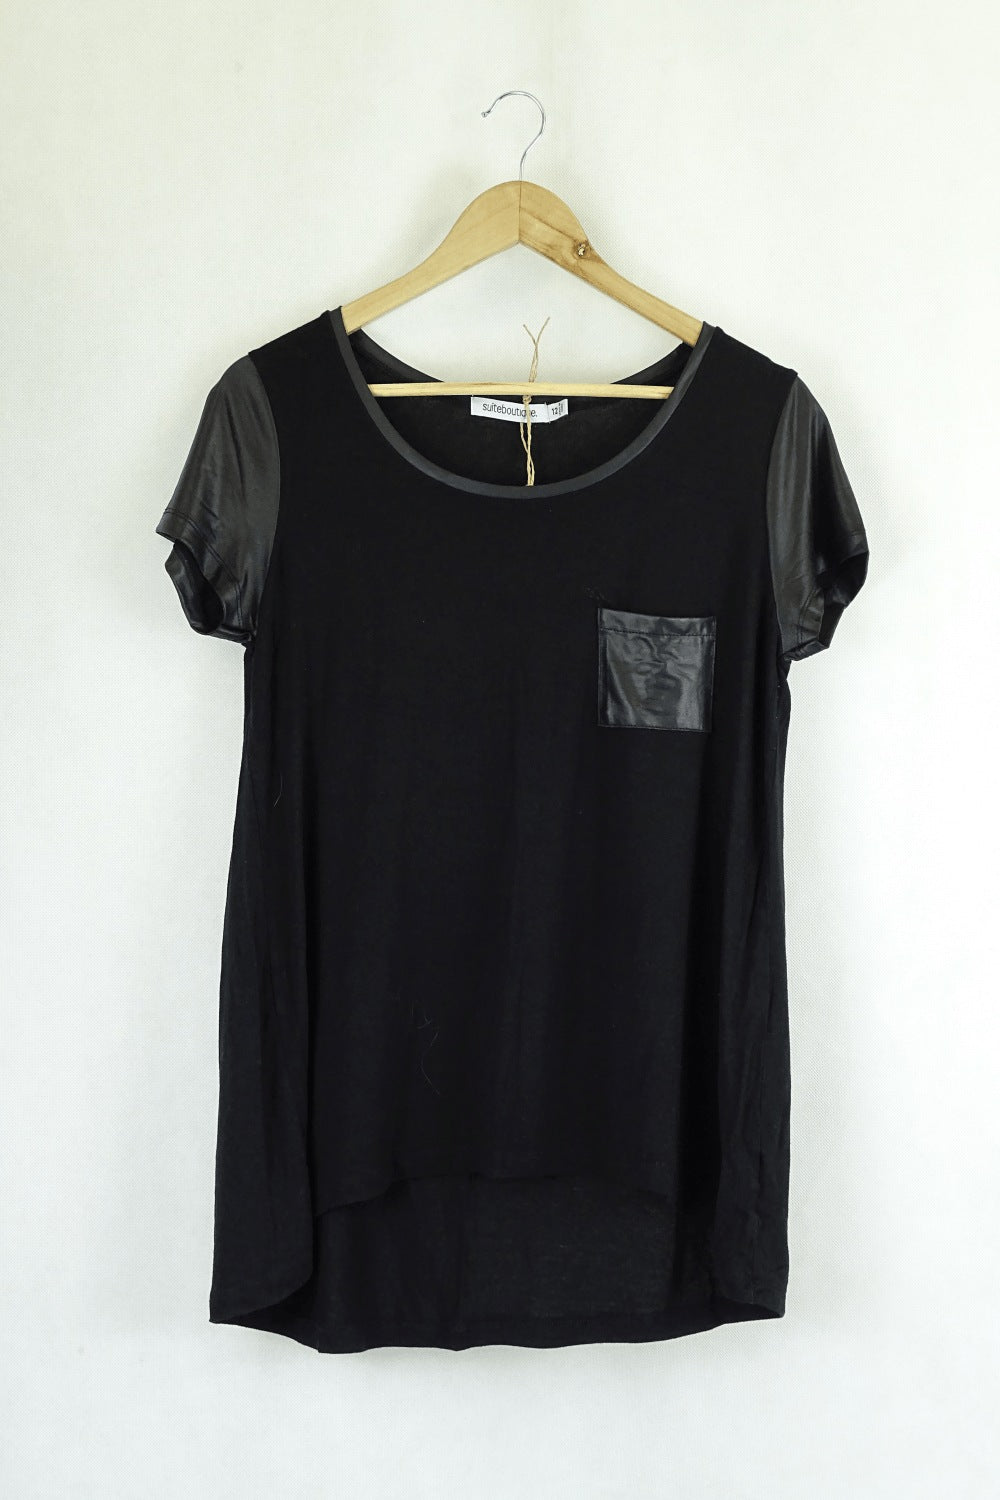 Suiteboutique Black T-Shirt 12